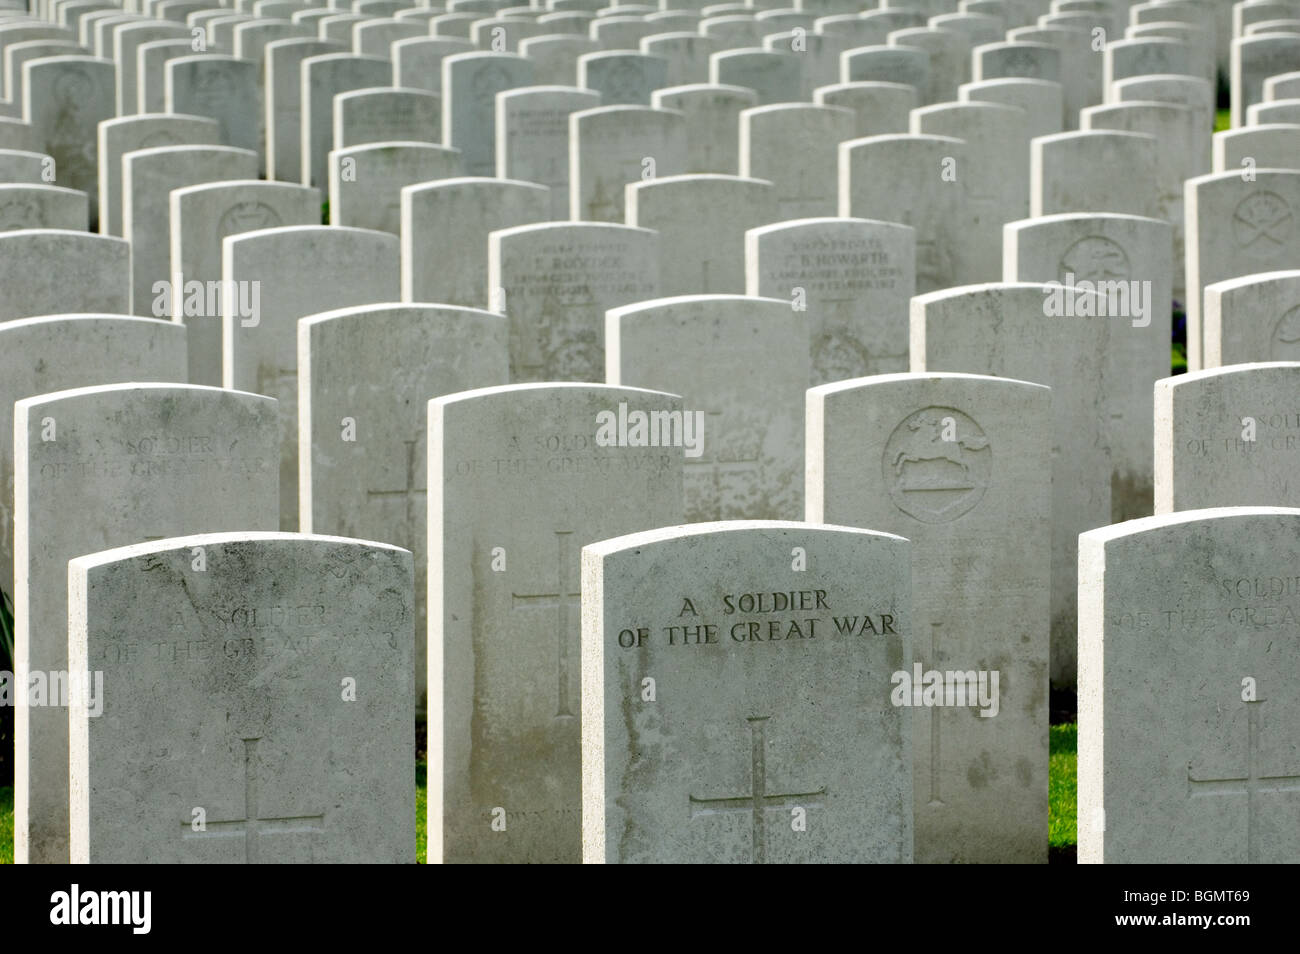 Righe bianche di lapidi di caduti della prima guerra mondiale i soldati nella prima guerra mondiale uno Tyne Cot cimitero, Passendale, Fiandre Occidentali, Belgio Foto Stock